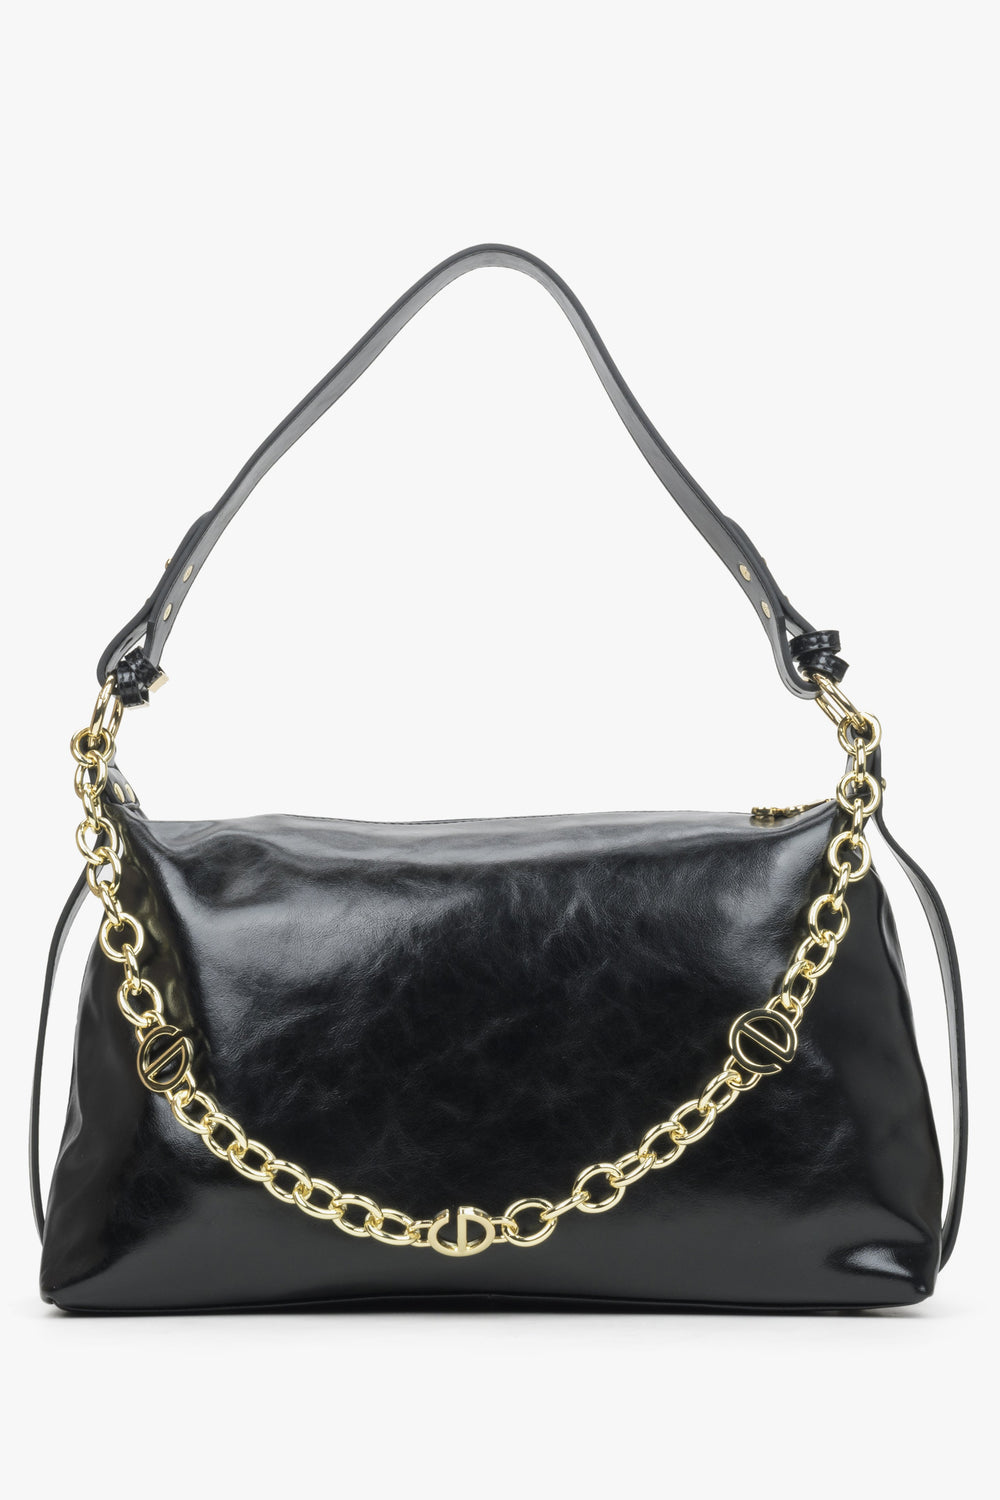 Women's Black Chain Handbag made of Leather Estro ER00114415.